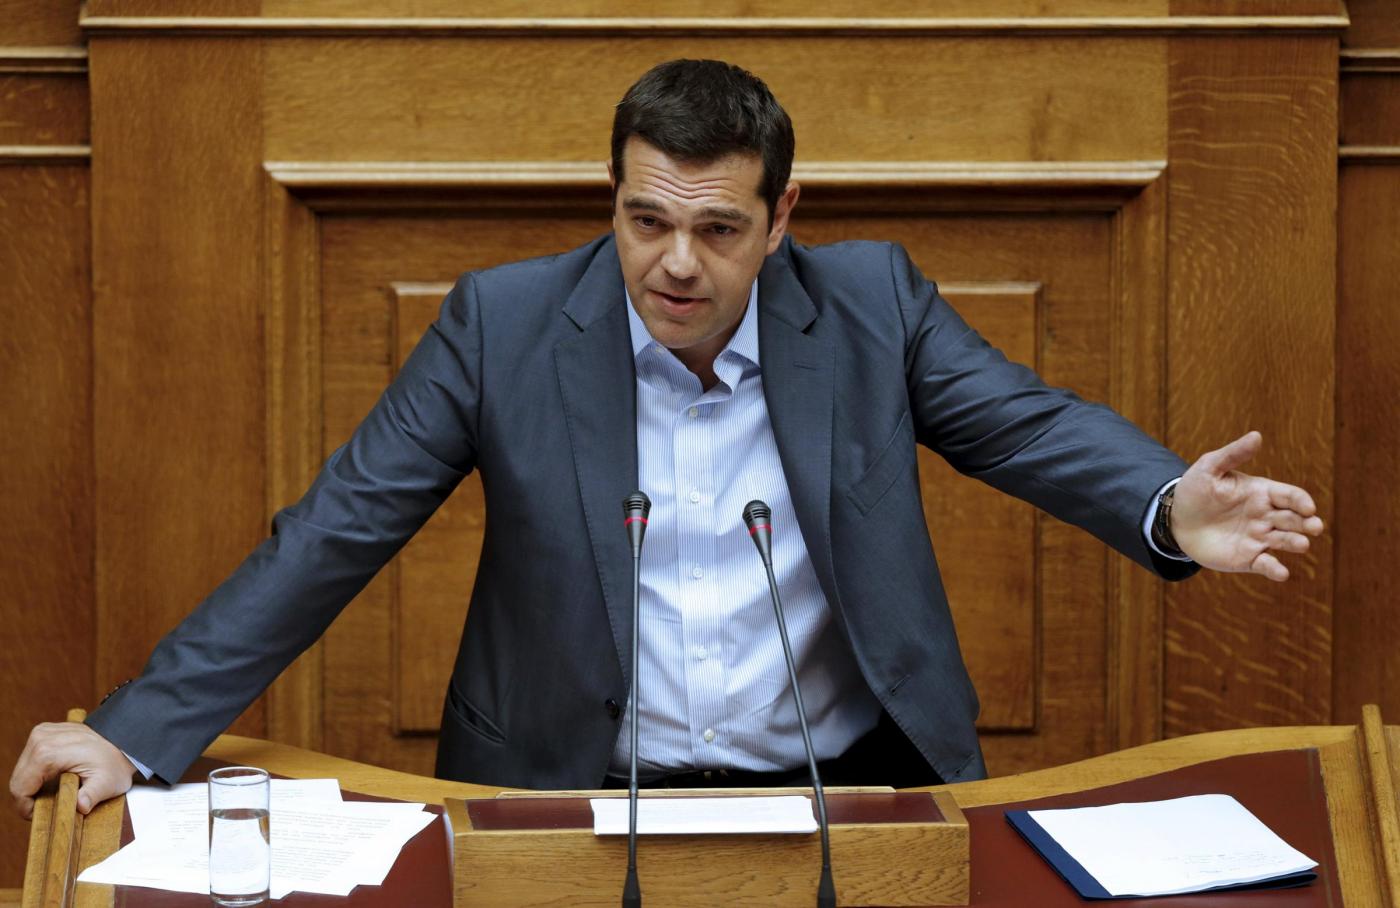 Alexis Tsipras dimissioni: sconfitta o mossa tattica del premier greco?